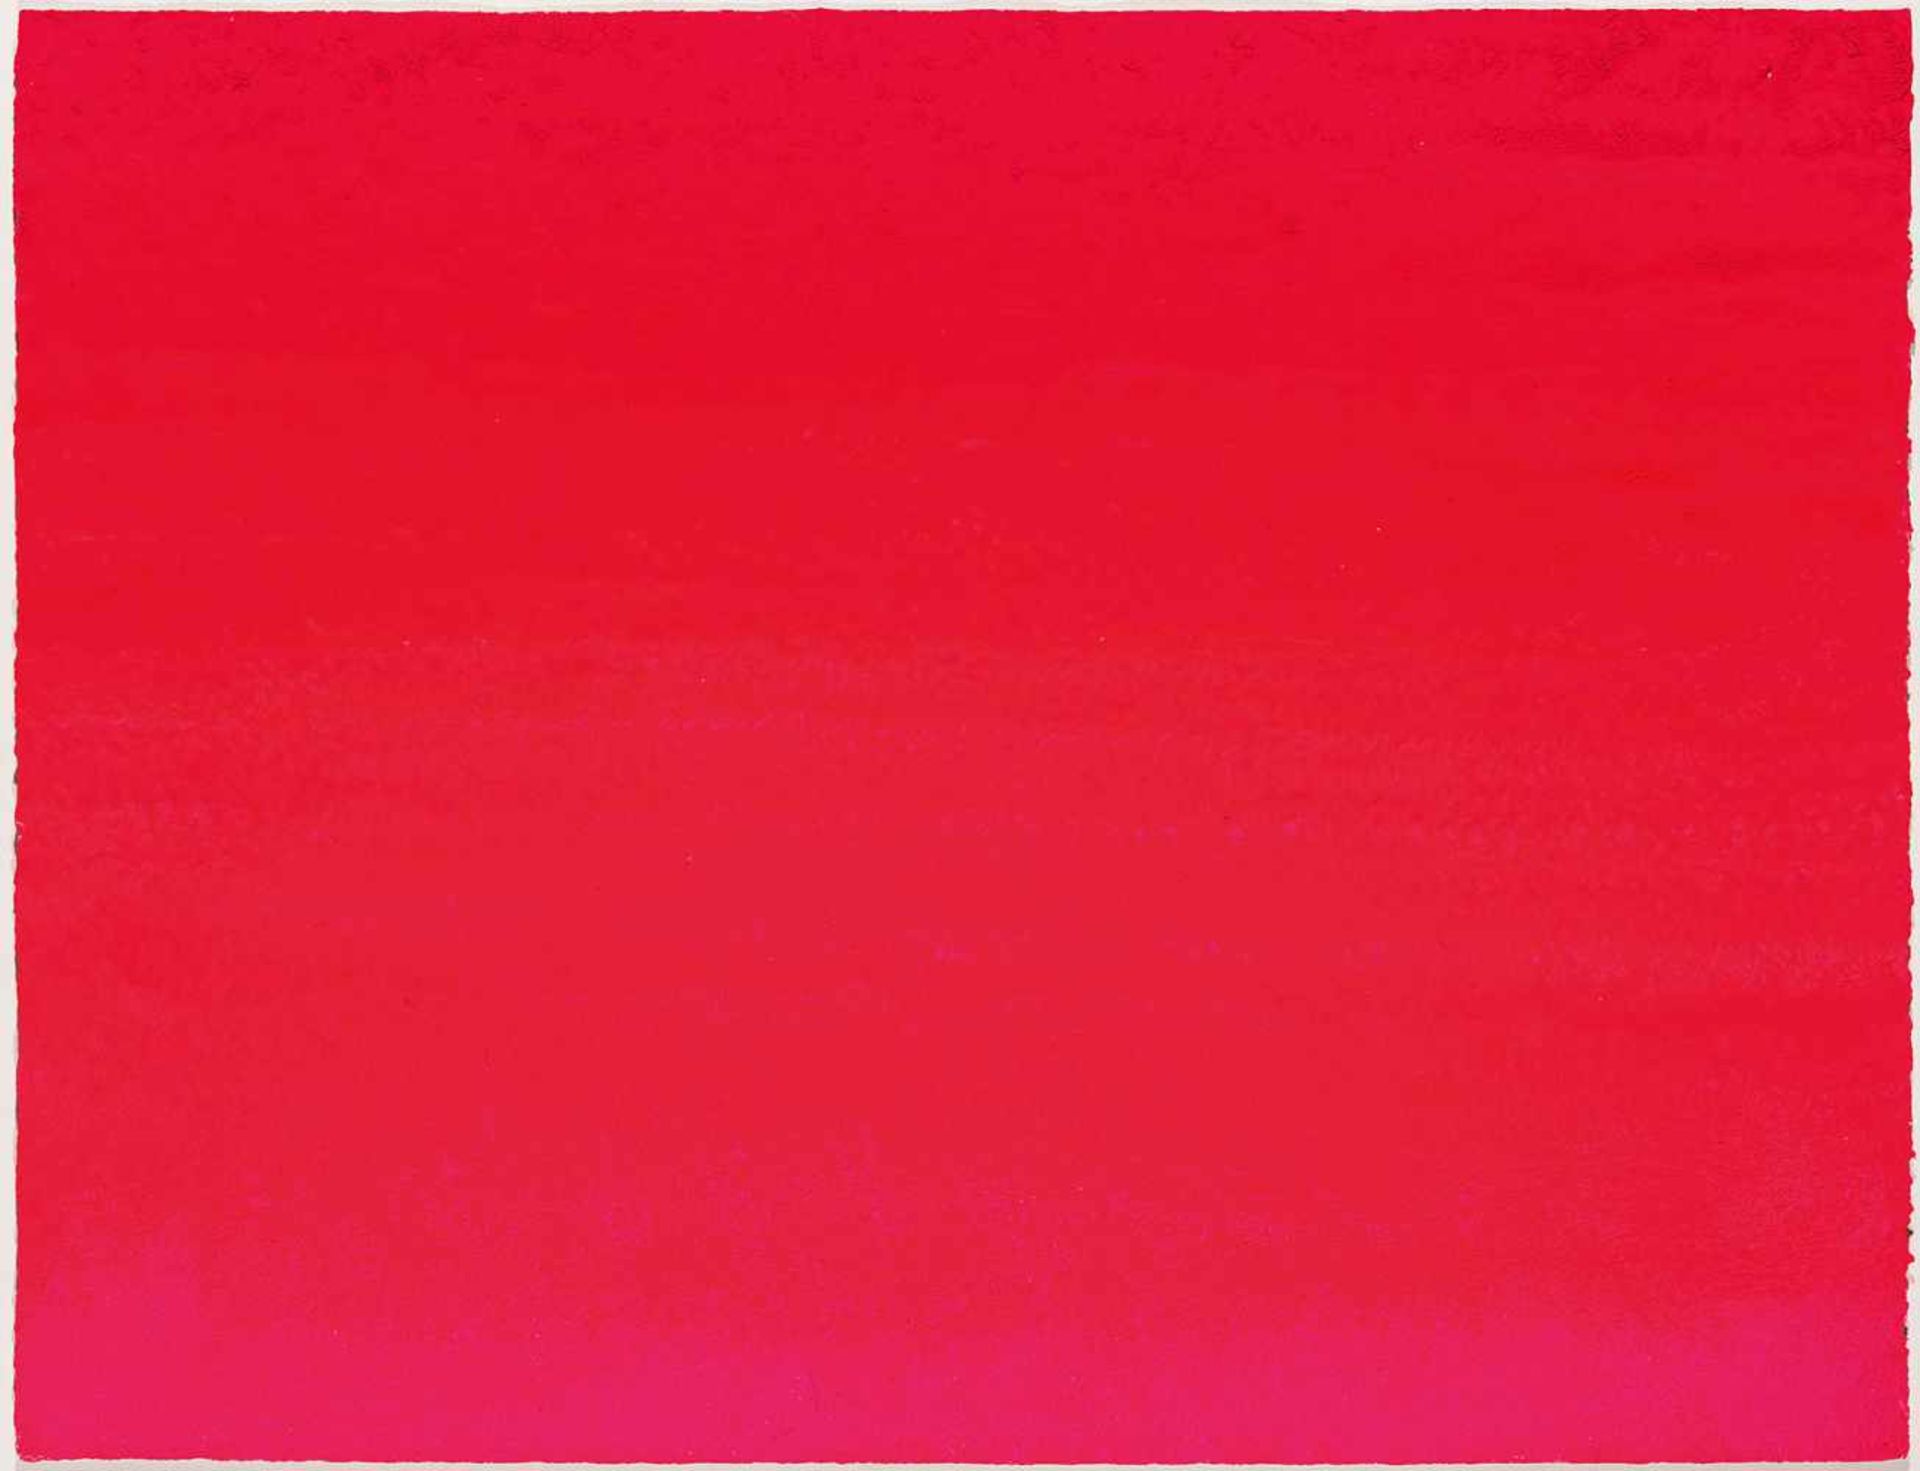 Geiger, Rupprecht (1908-2009)Fläche in Rot. Gouache, Karton. Verso signiert und datiert 1/(19)88